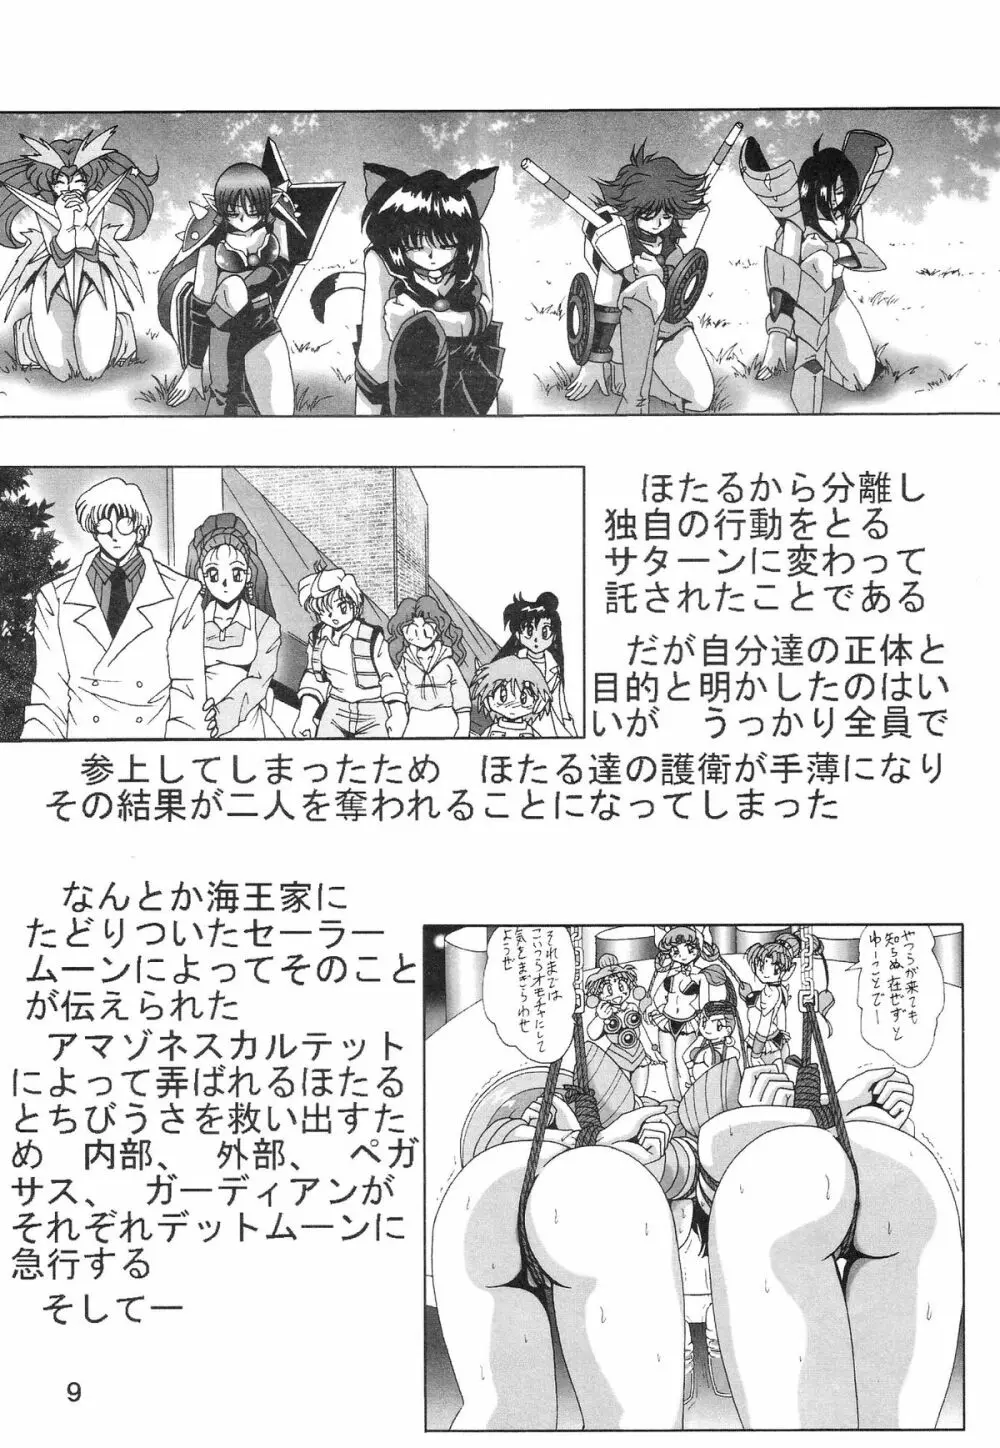 サイレント・サターン SS vol.8 9ページ